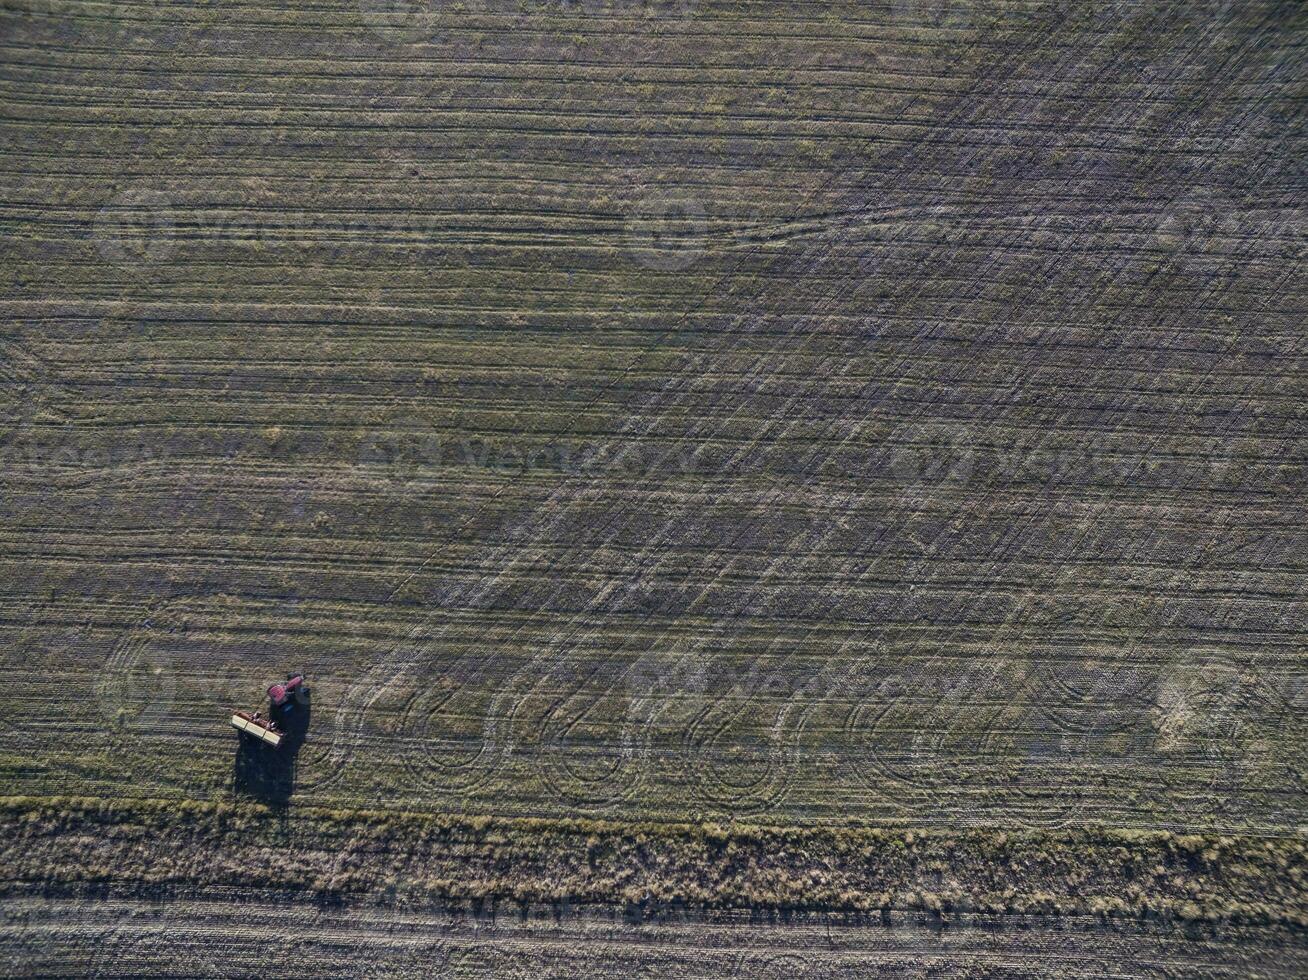 tractor y sembradora, directo siembra en el pampa, argentina foto